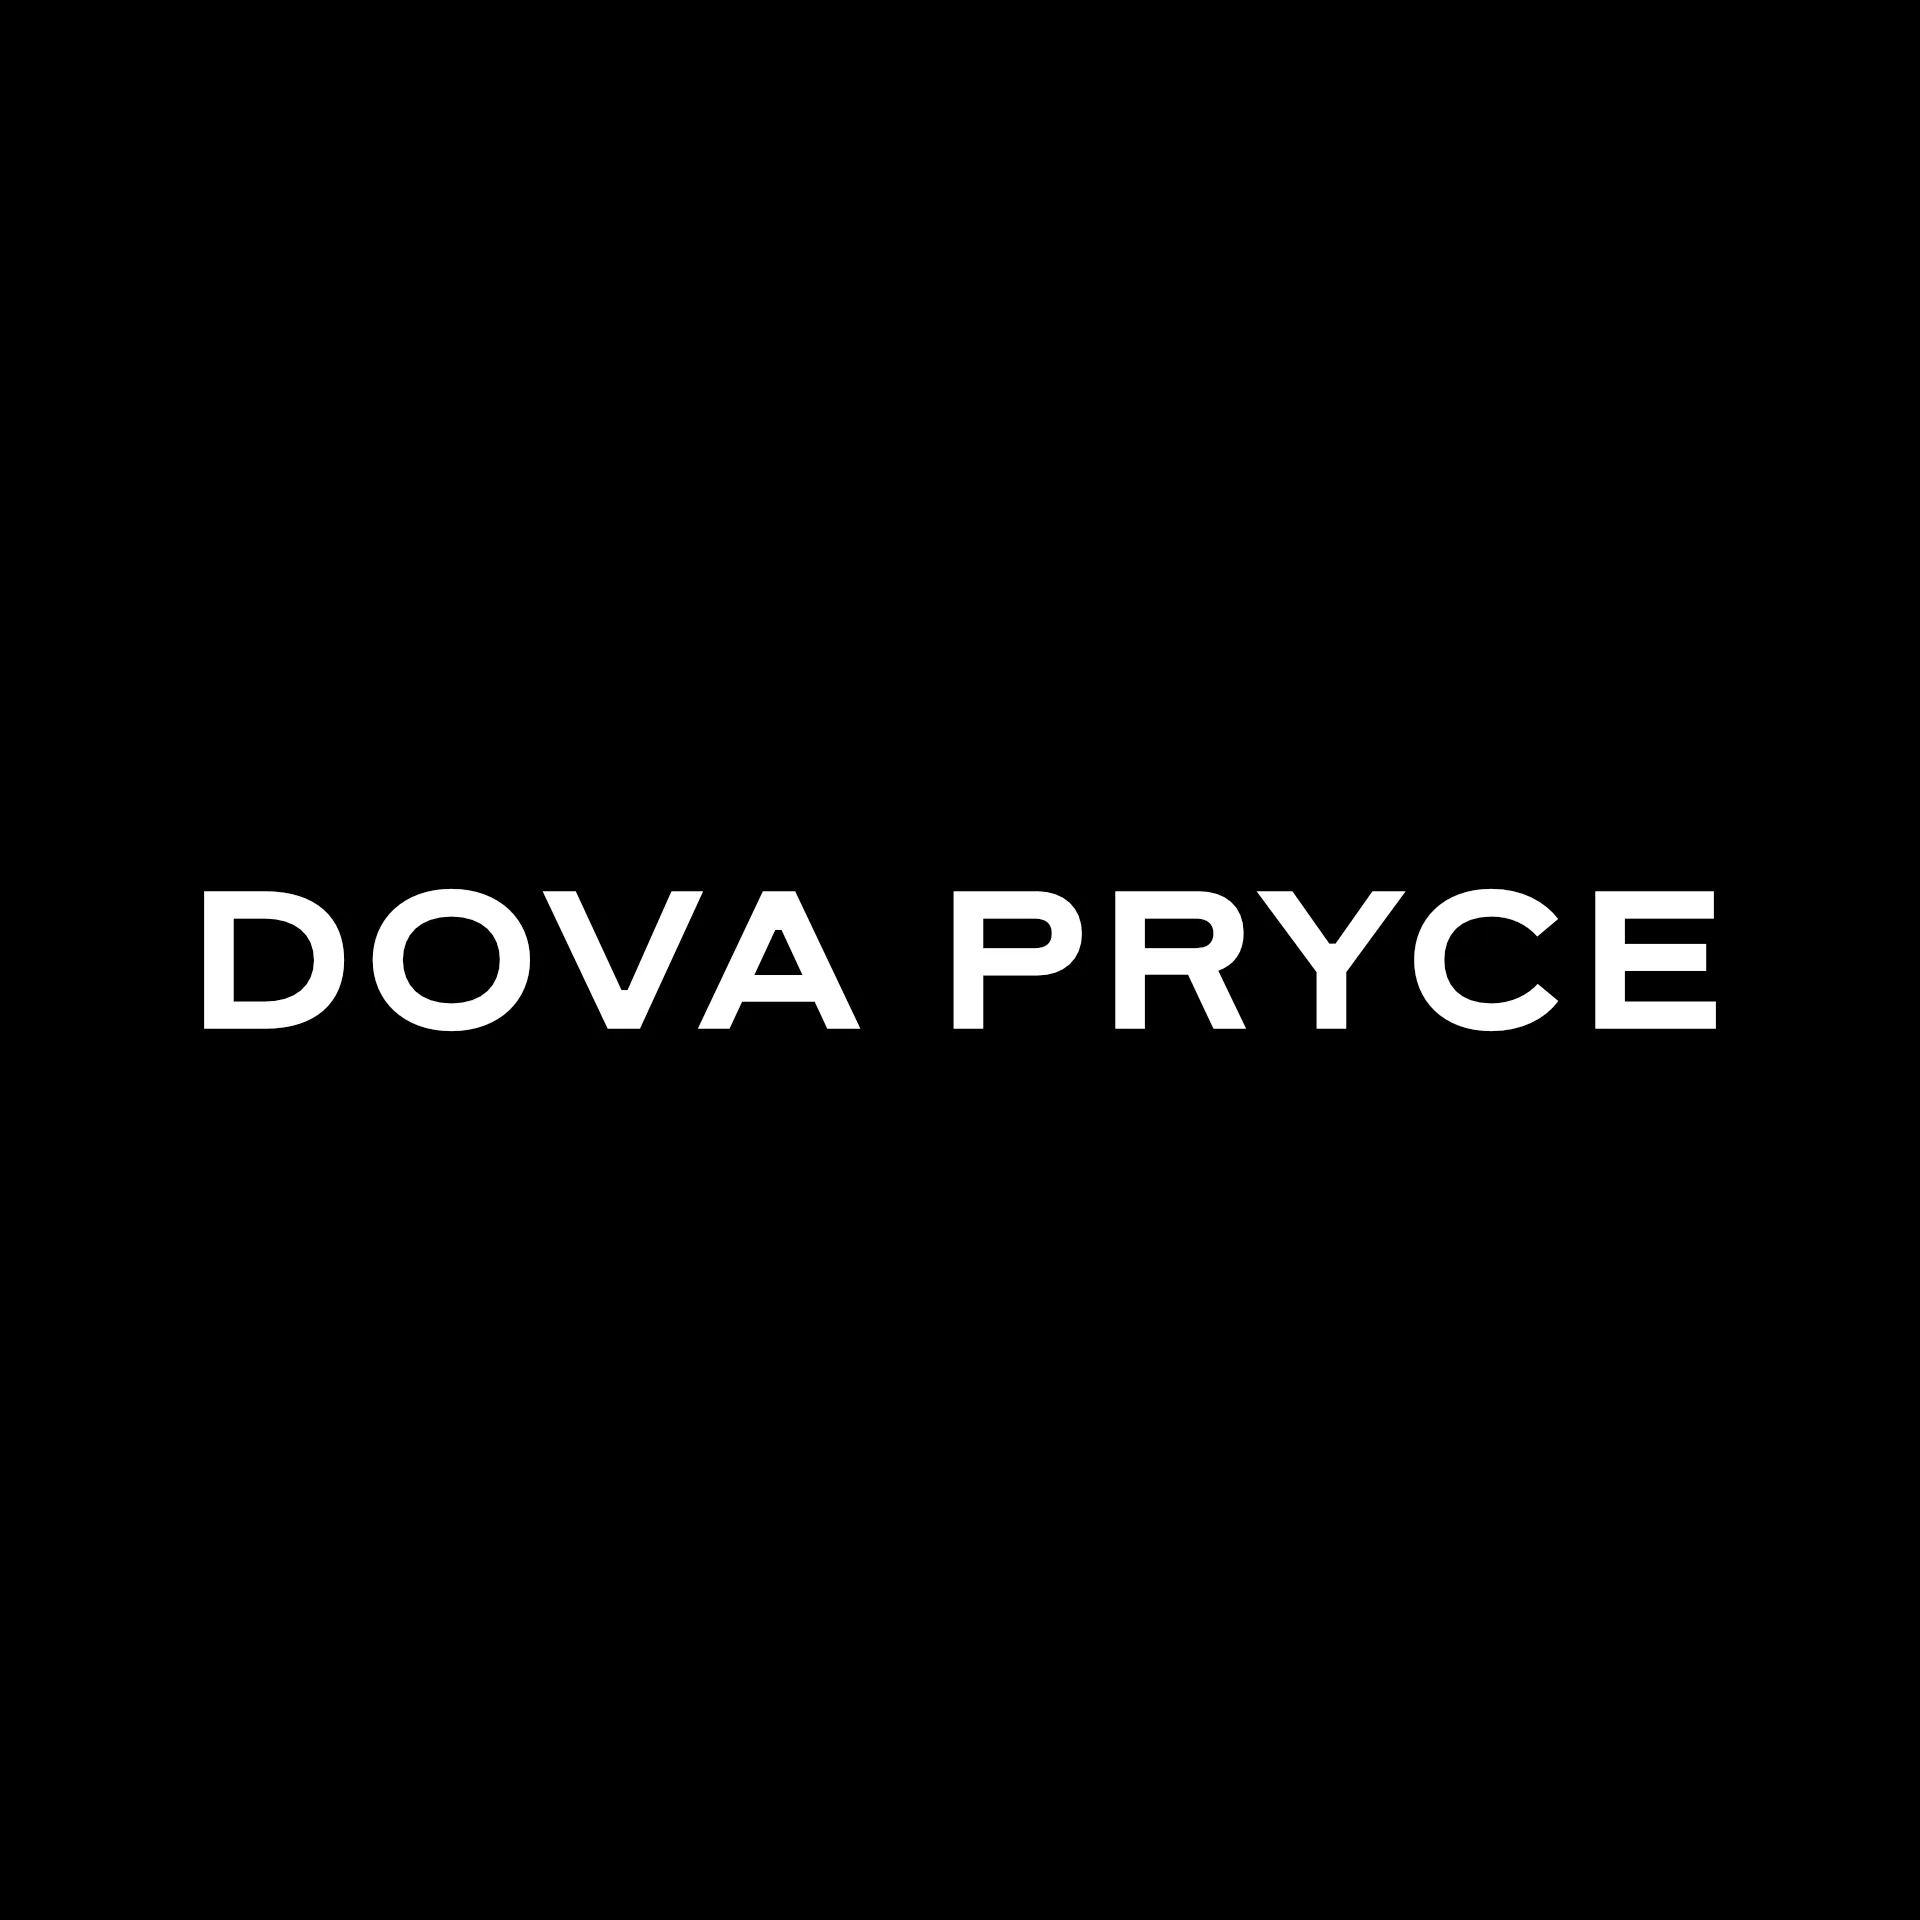 DOVA PRYCE logo